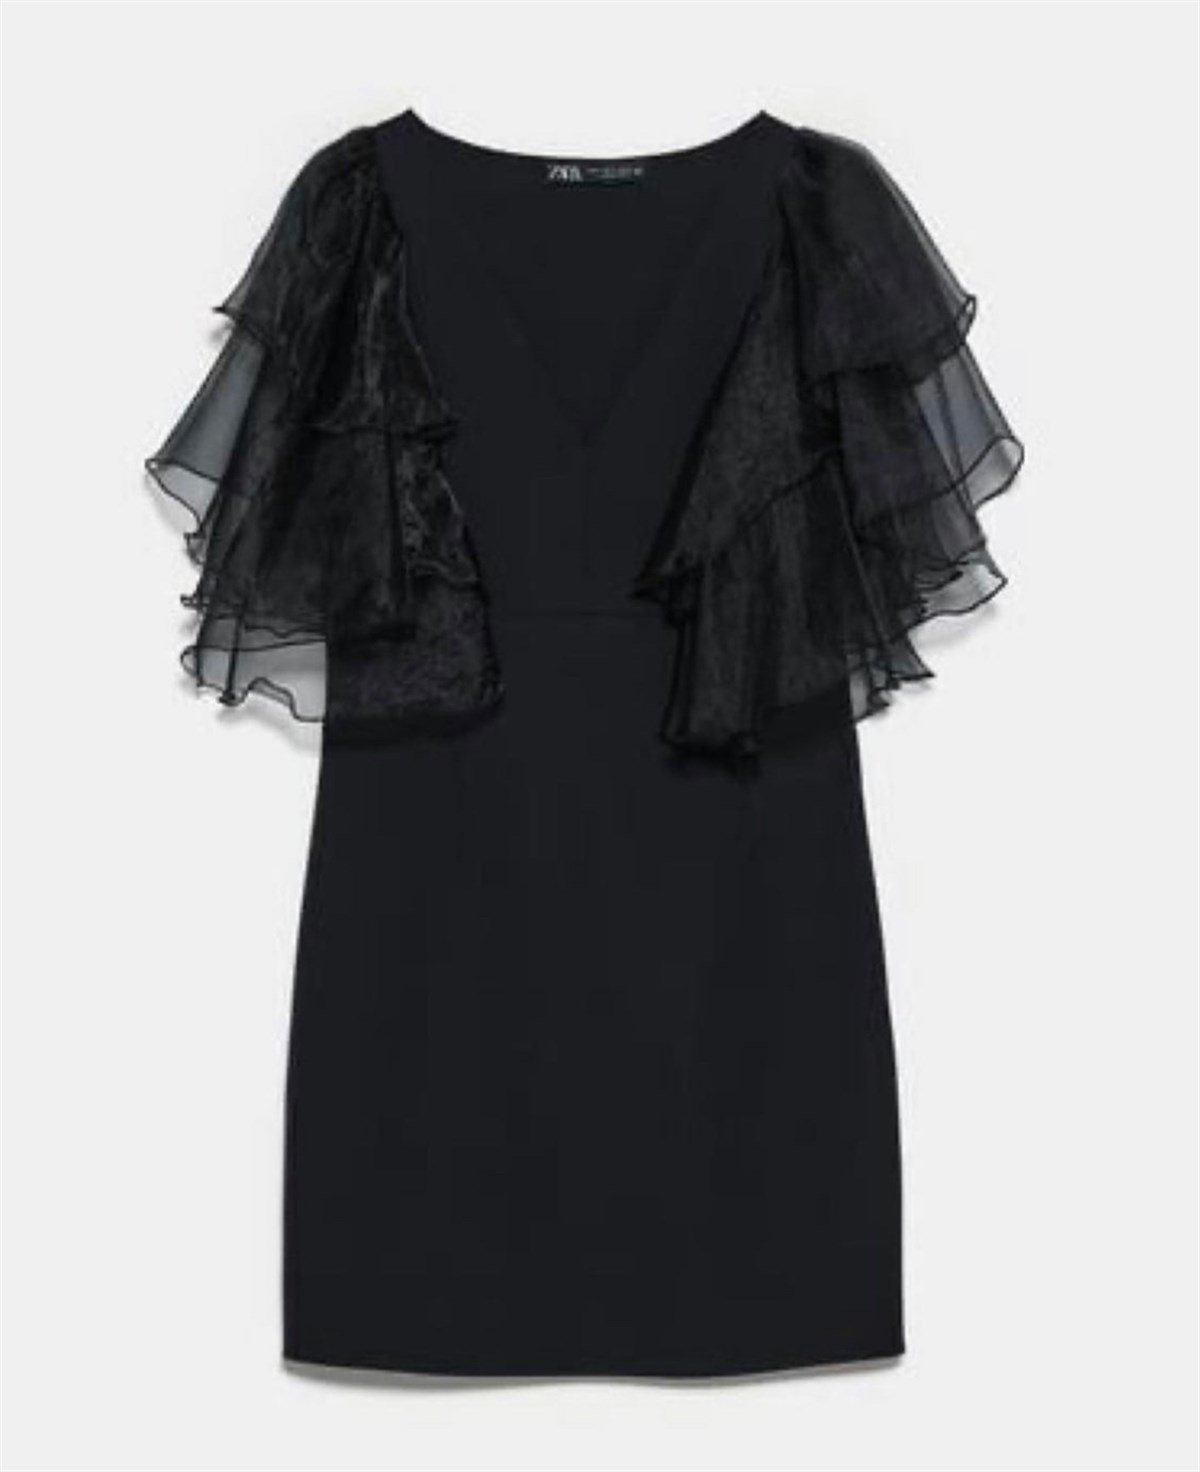 Zara elbise, siyah elbise, abiye elbise